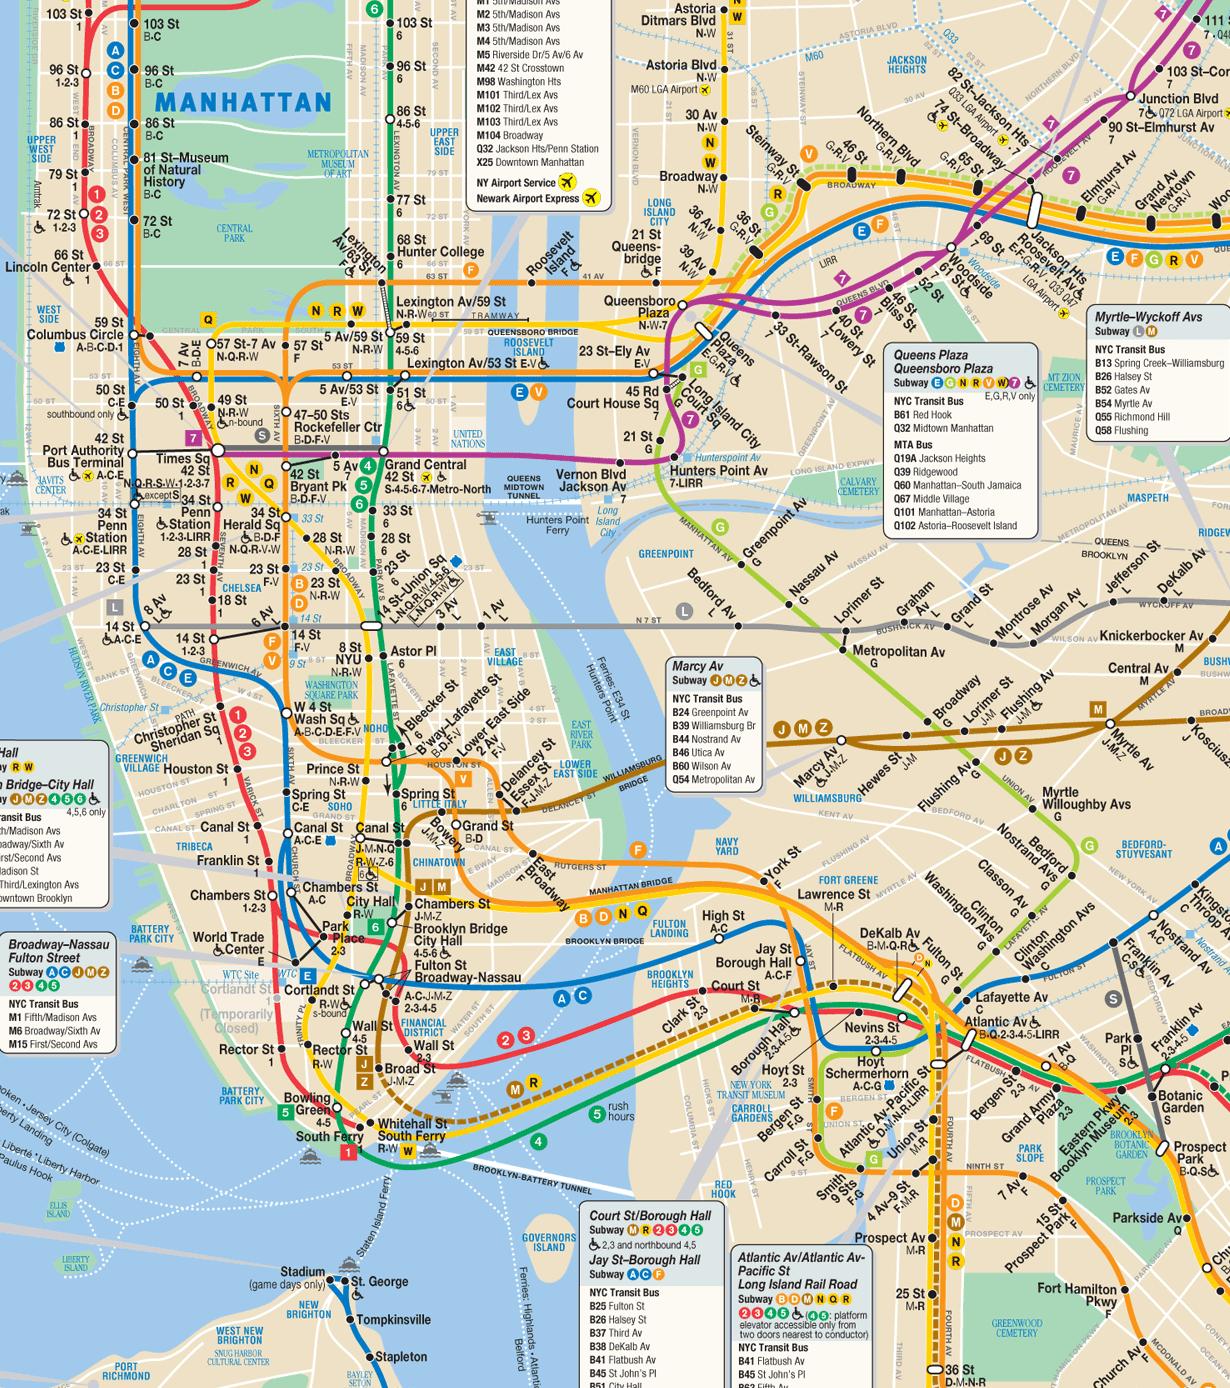 mta nyc subway map